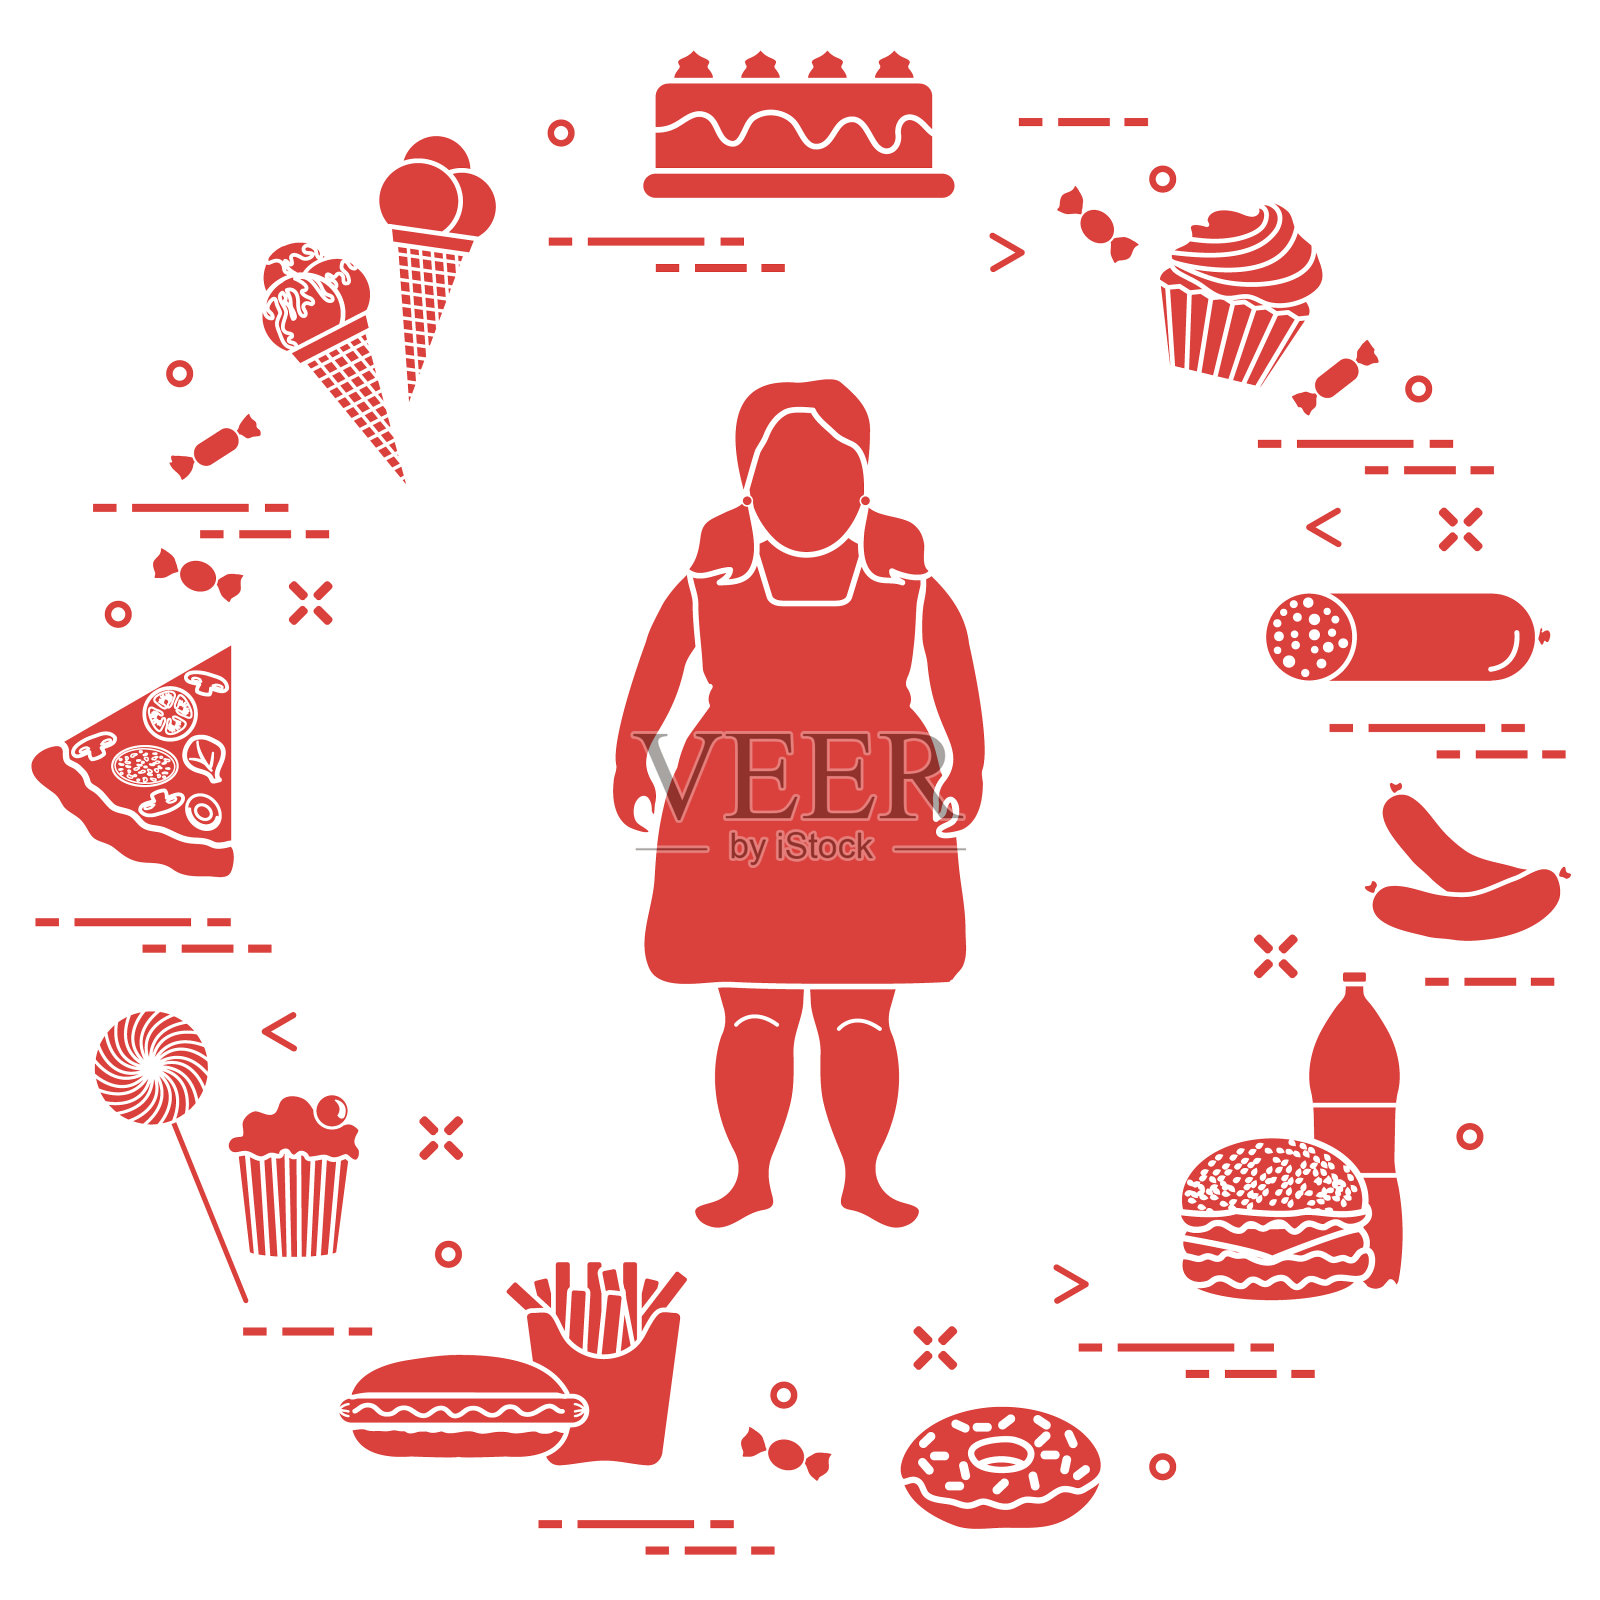 有害的饮食习惯和肥胖的女孩。插画图片素材